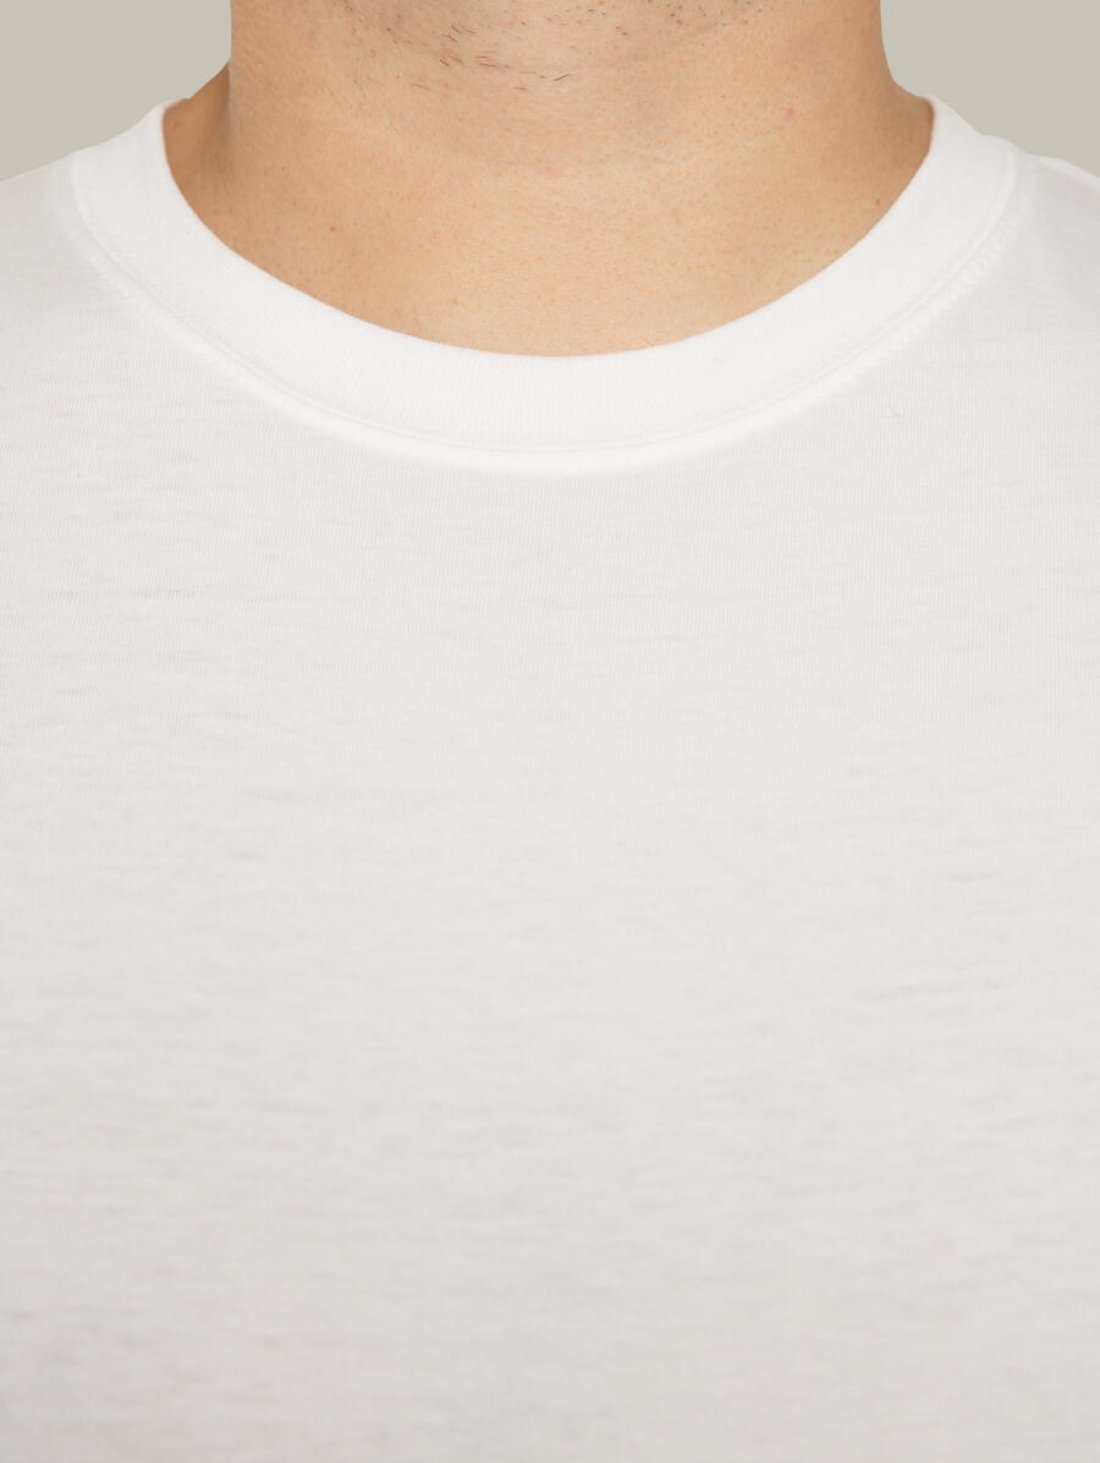 Чоловіча футболка, біла з принтом аватара Hopper 037